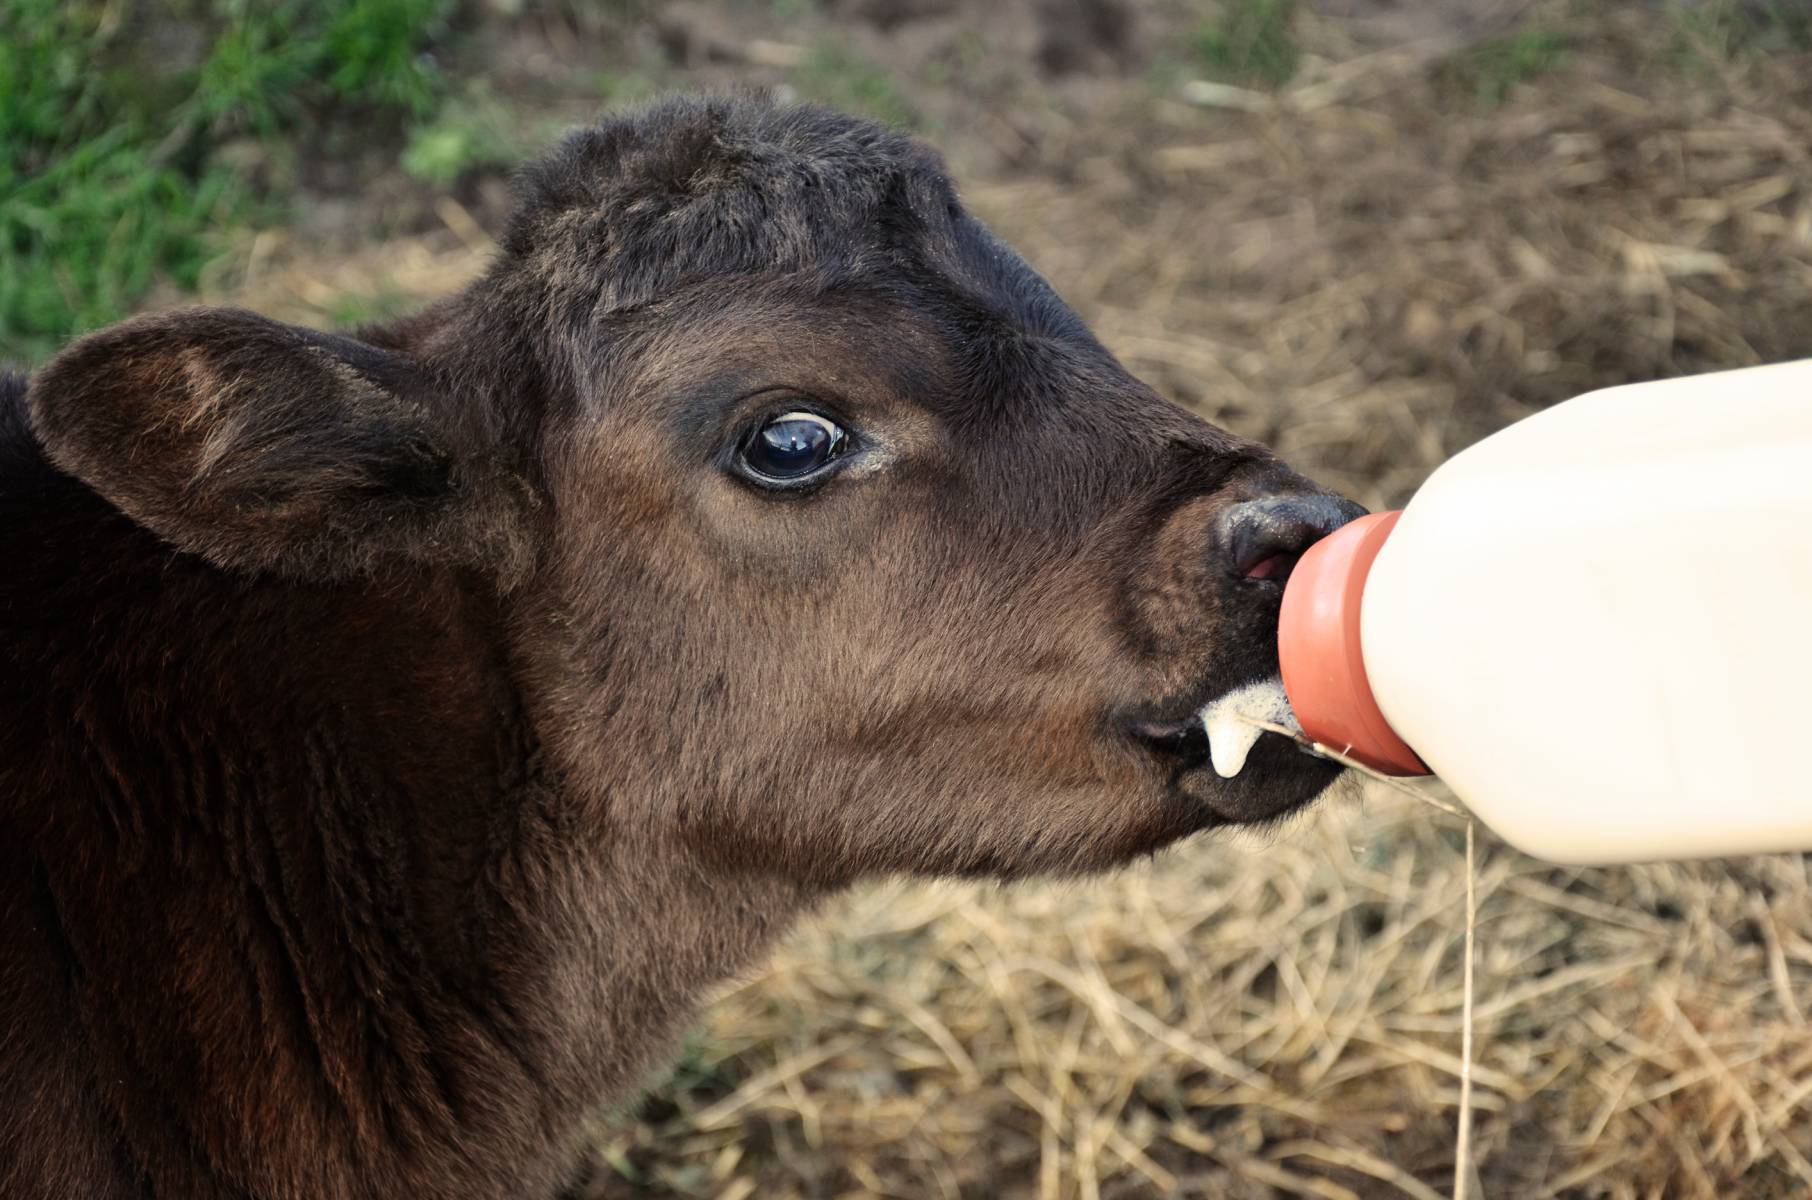 Bottle feeding a calf (Photo courtesy of Frank J. Buchman)